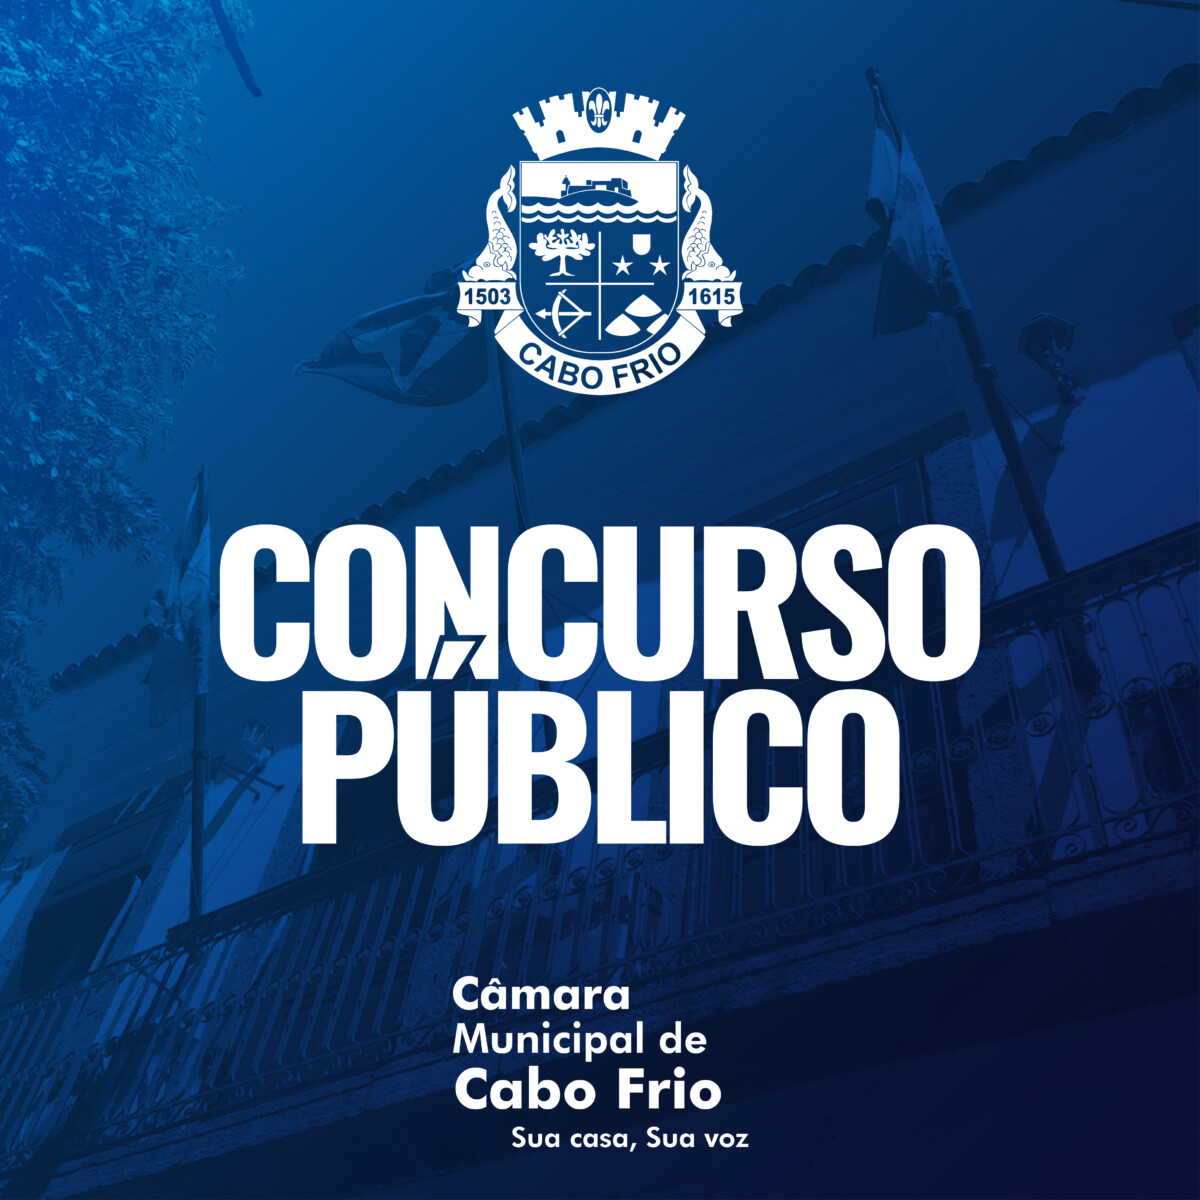 Câmara de Paracambi RJ: Concurso com 19 vagas de início imediato!, Grupo  Concurso Público